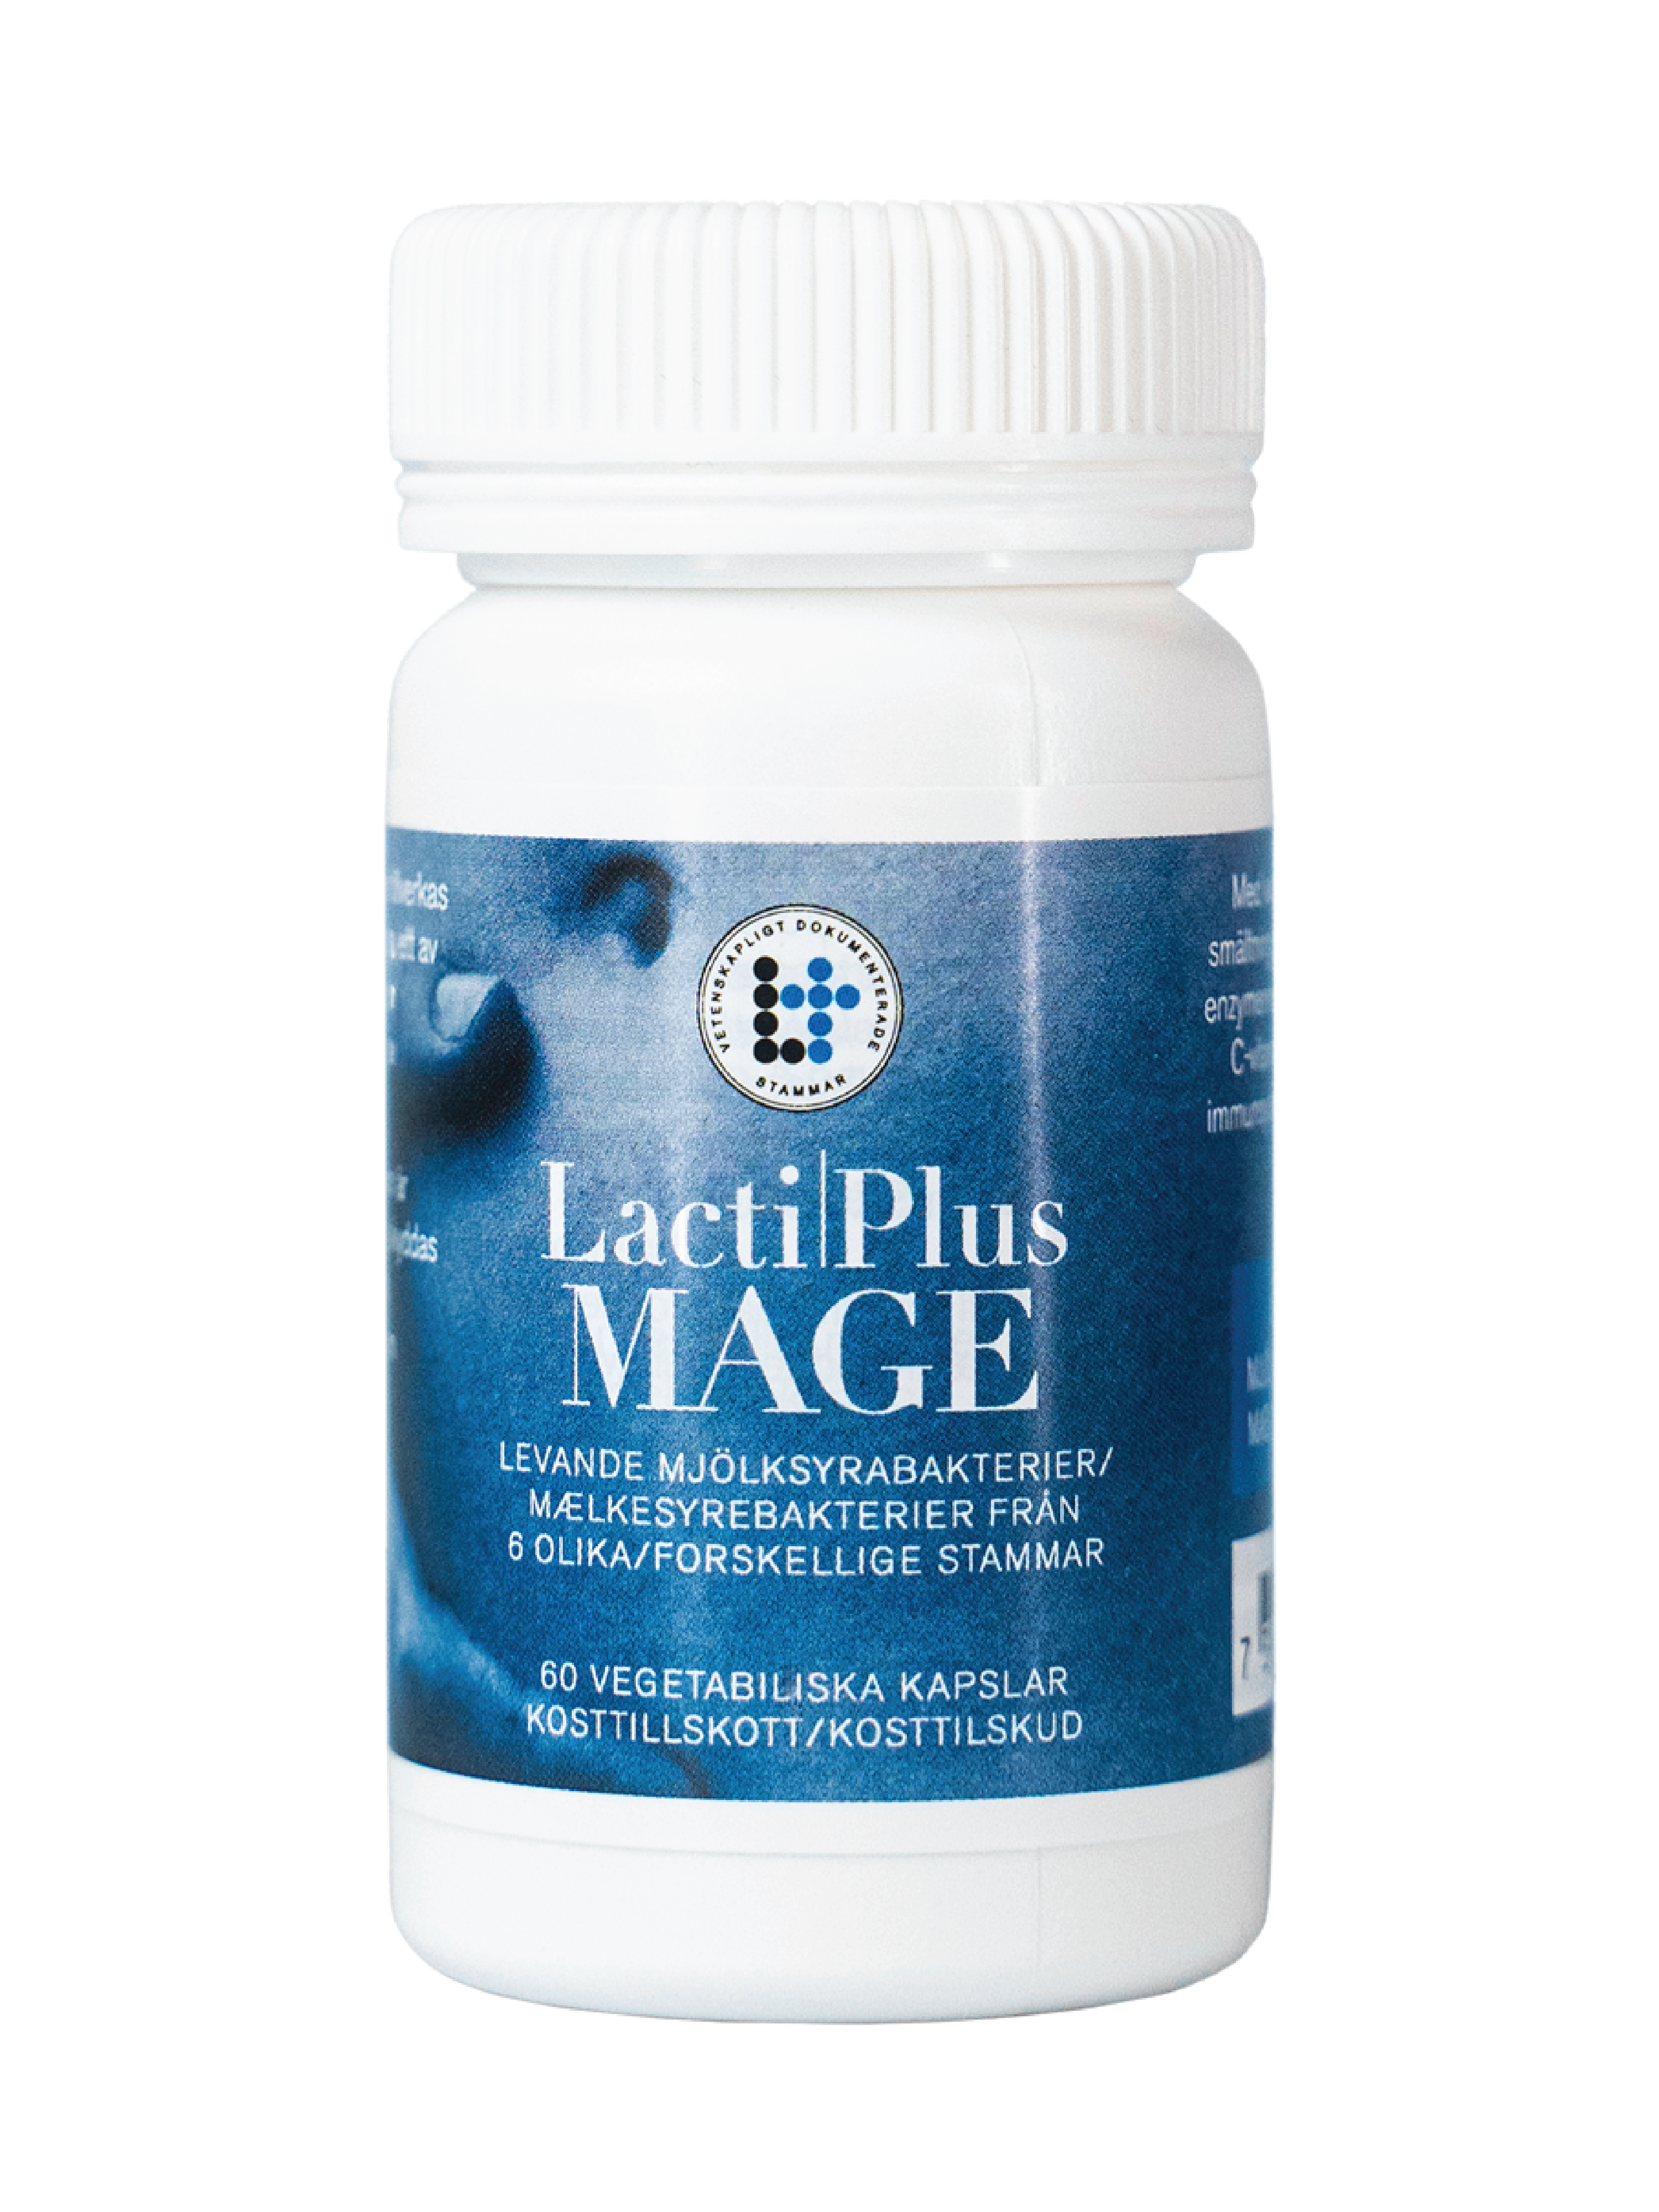 LactiPlus Mage – melkesyrebakterier for daglig bruk, 60 kapsler